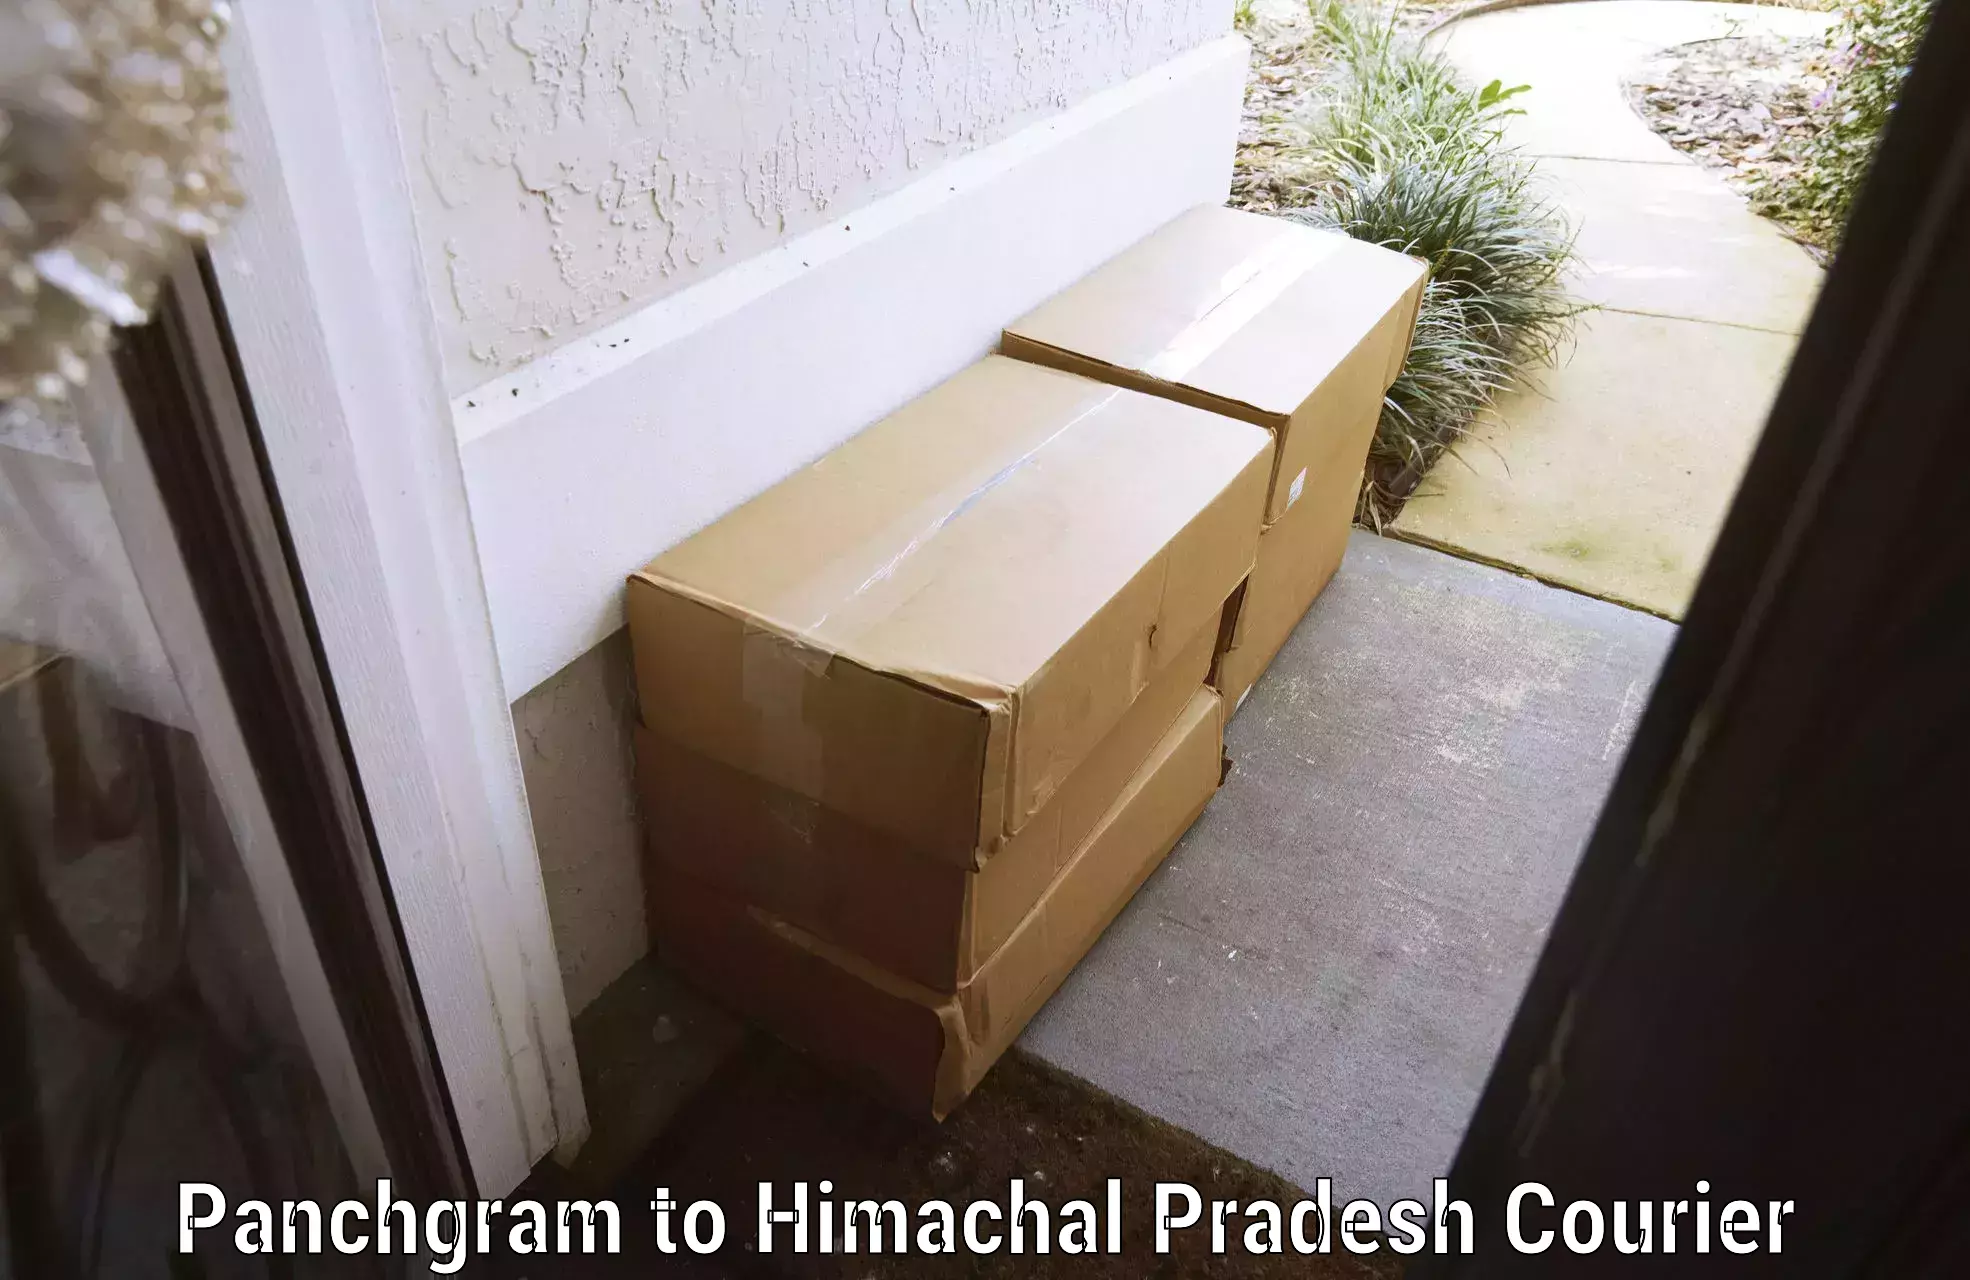 Baggage shipping service Panchgram to Himachal Pradesh